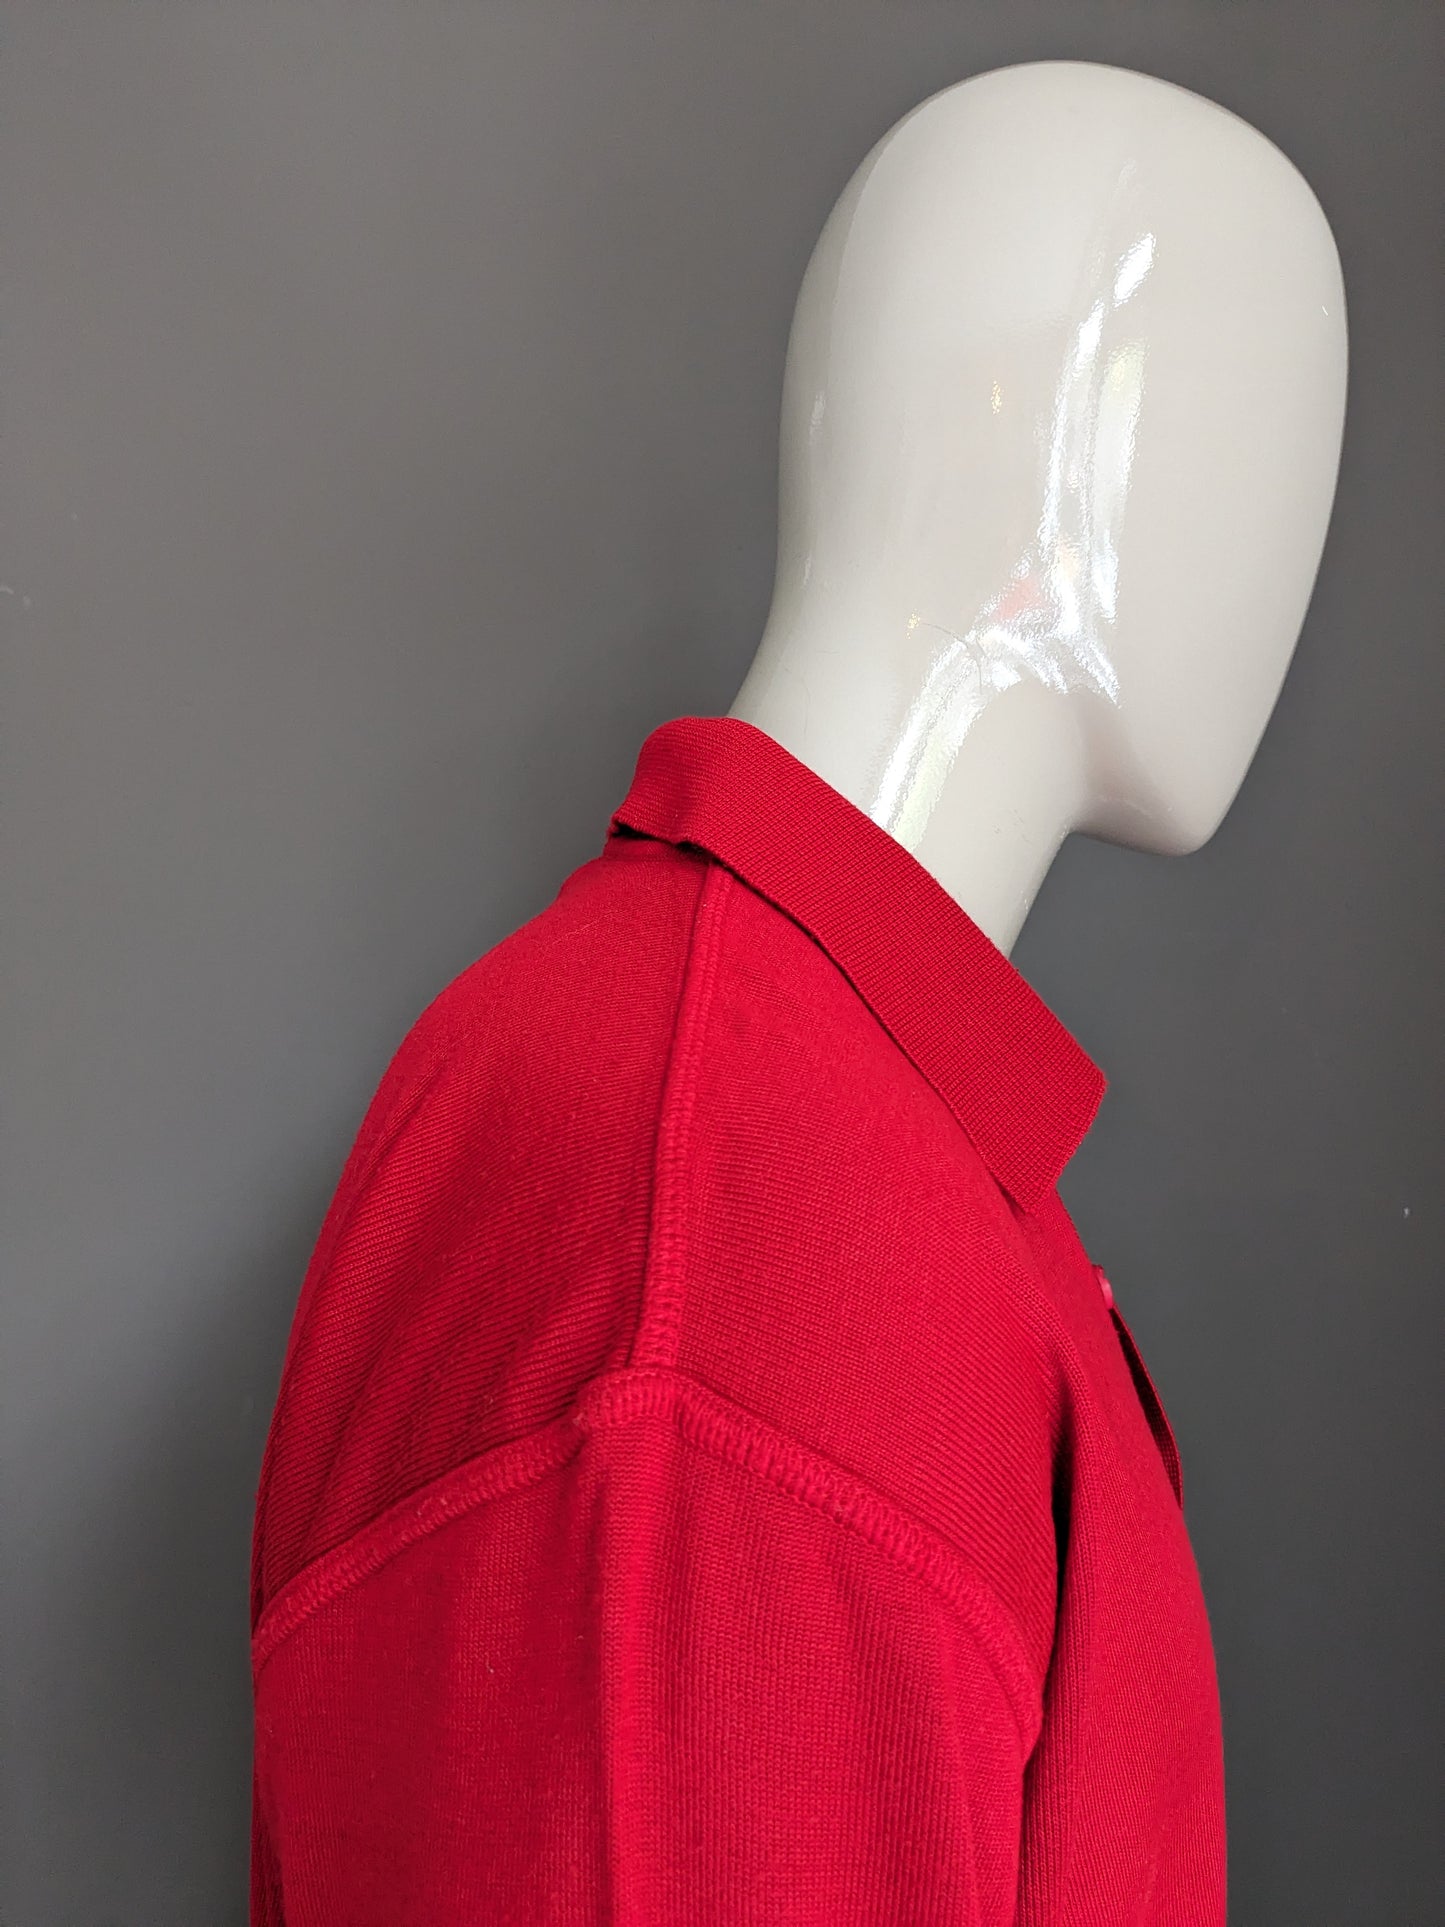 Vintage N.L.F. Maglione polo di lana con bottoni. Rosso colorato. Dimensione 2xl / xxl. 50% lana.